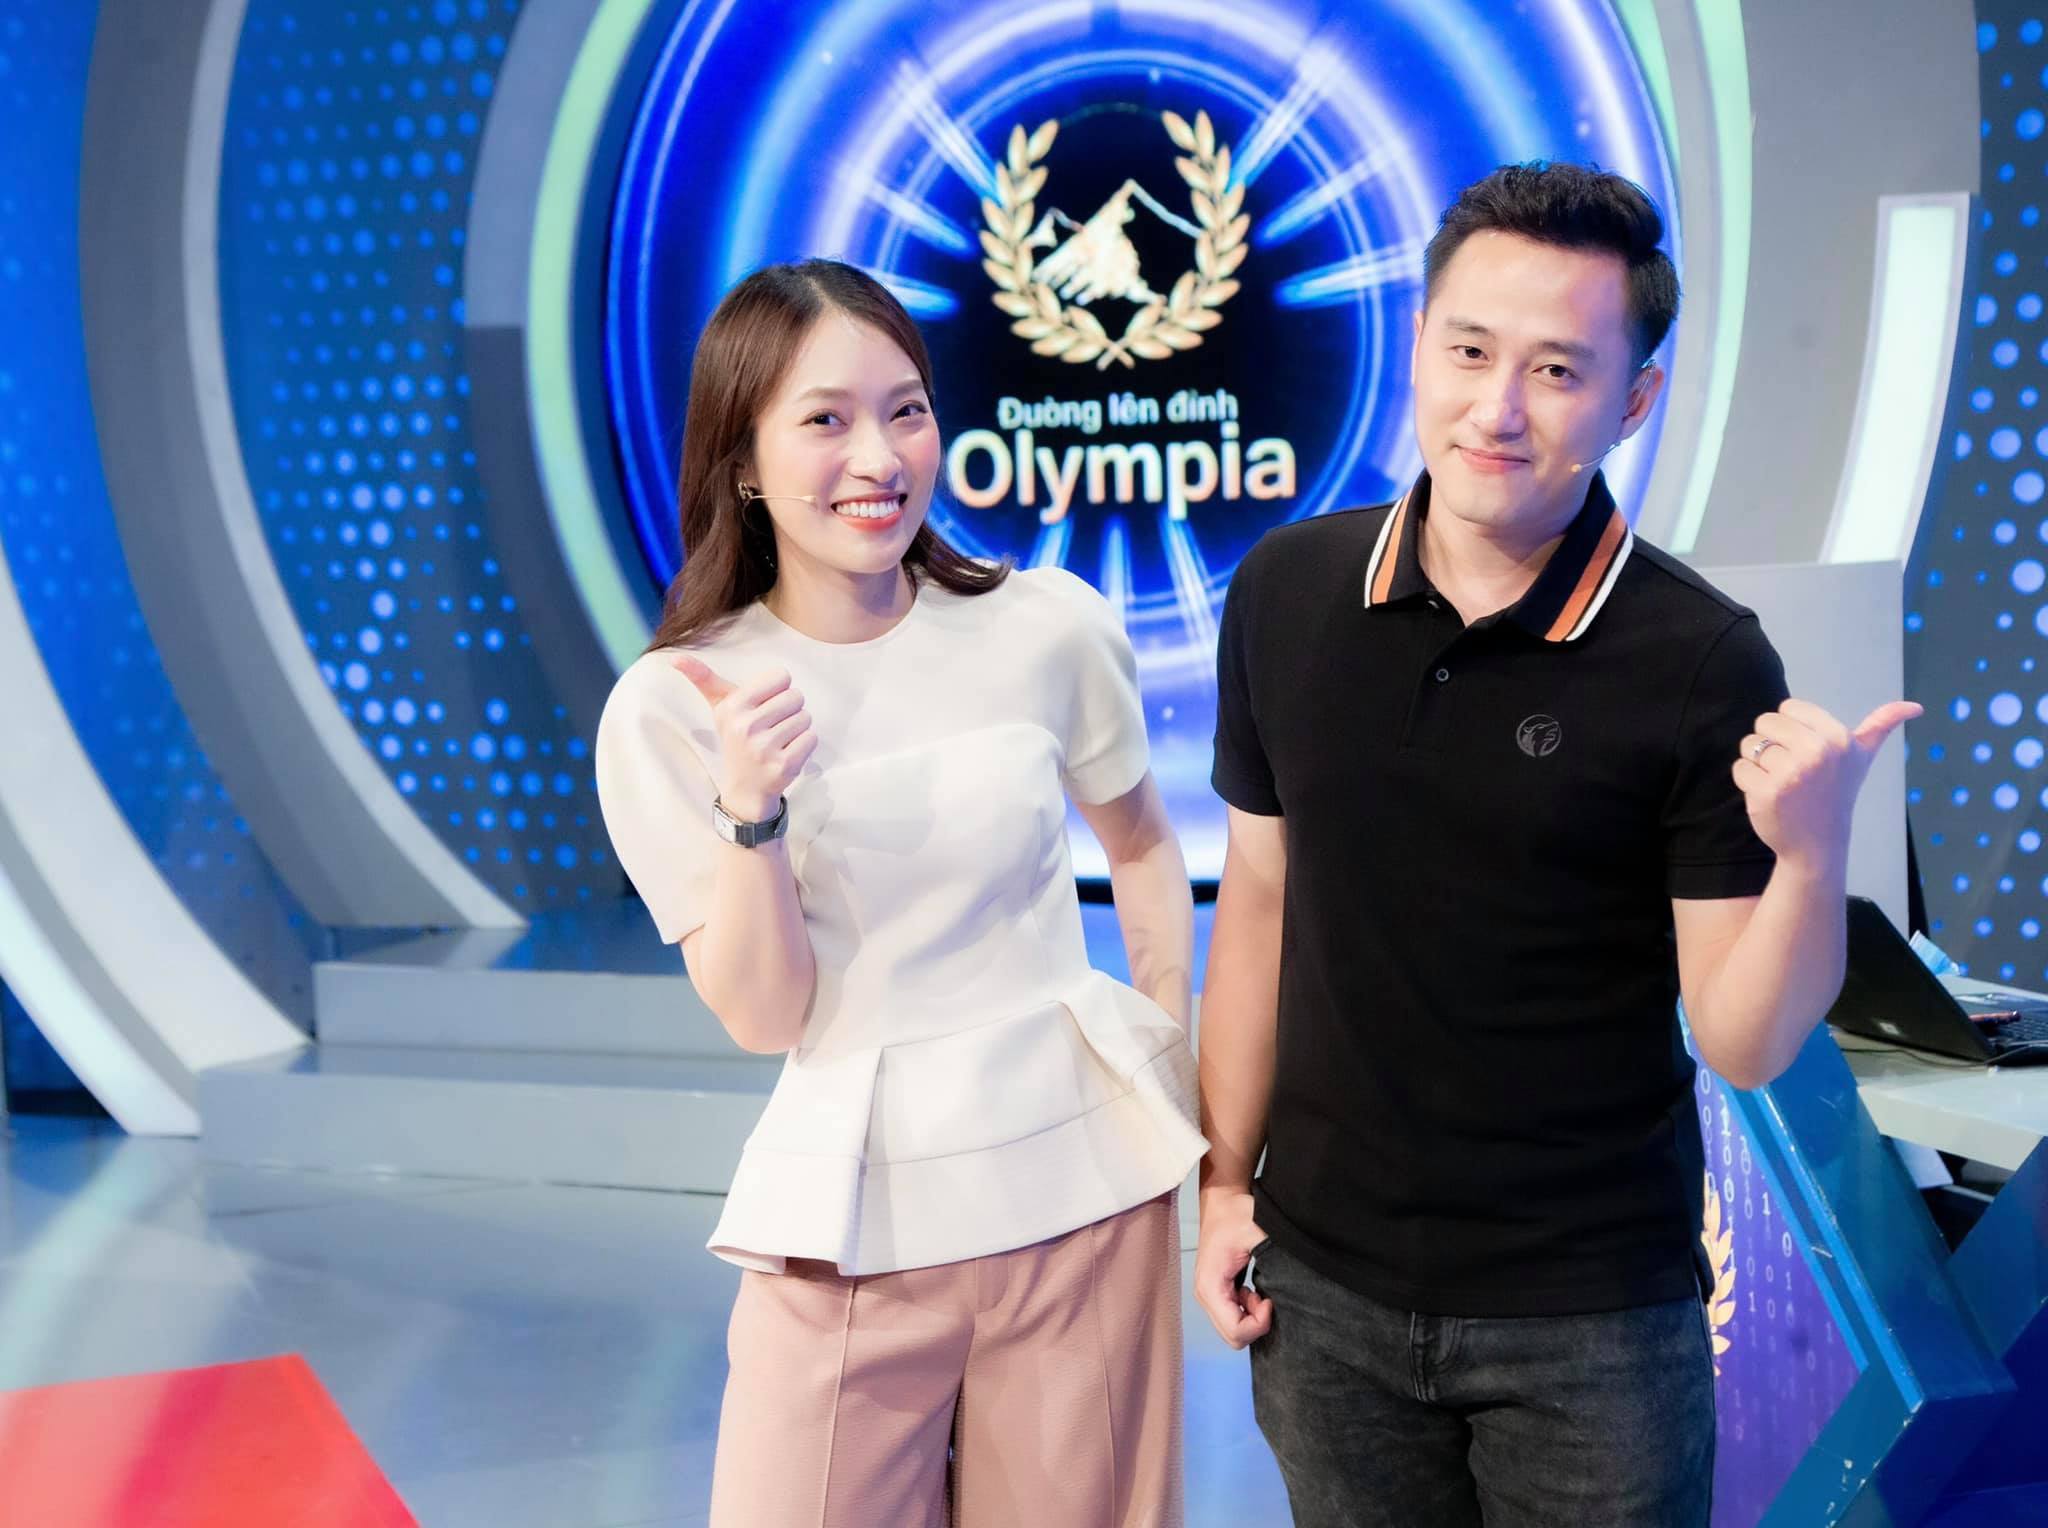 Gương mặt trẻ Khánh Vy được lựa chọn để đảm nhiệm vị trí dẫn dắt cùng MC Ngọc Huy trong chương trình Đường lên đỉnh Olympia.